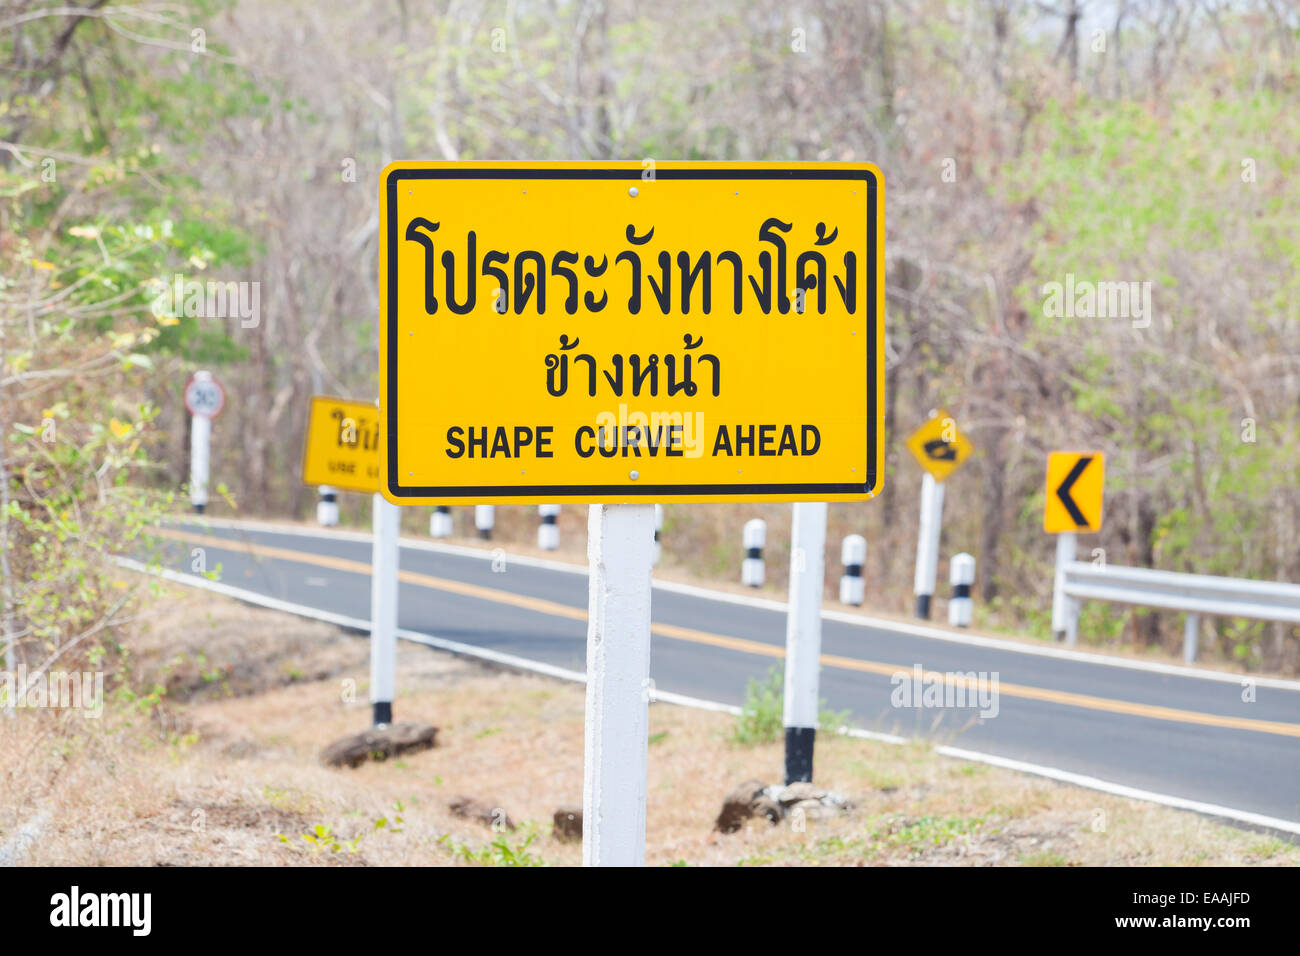 Inglés divertido error de ortografía en un cartel en Tailandia Foto de stock